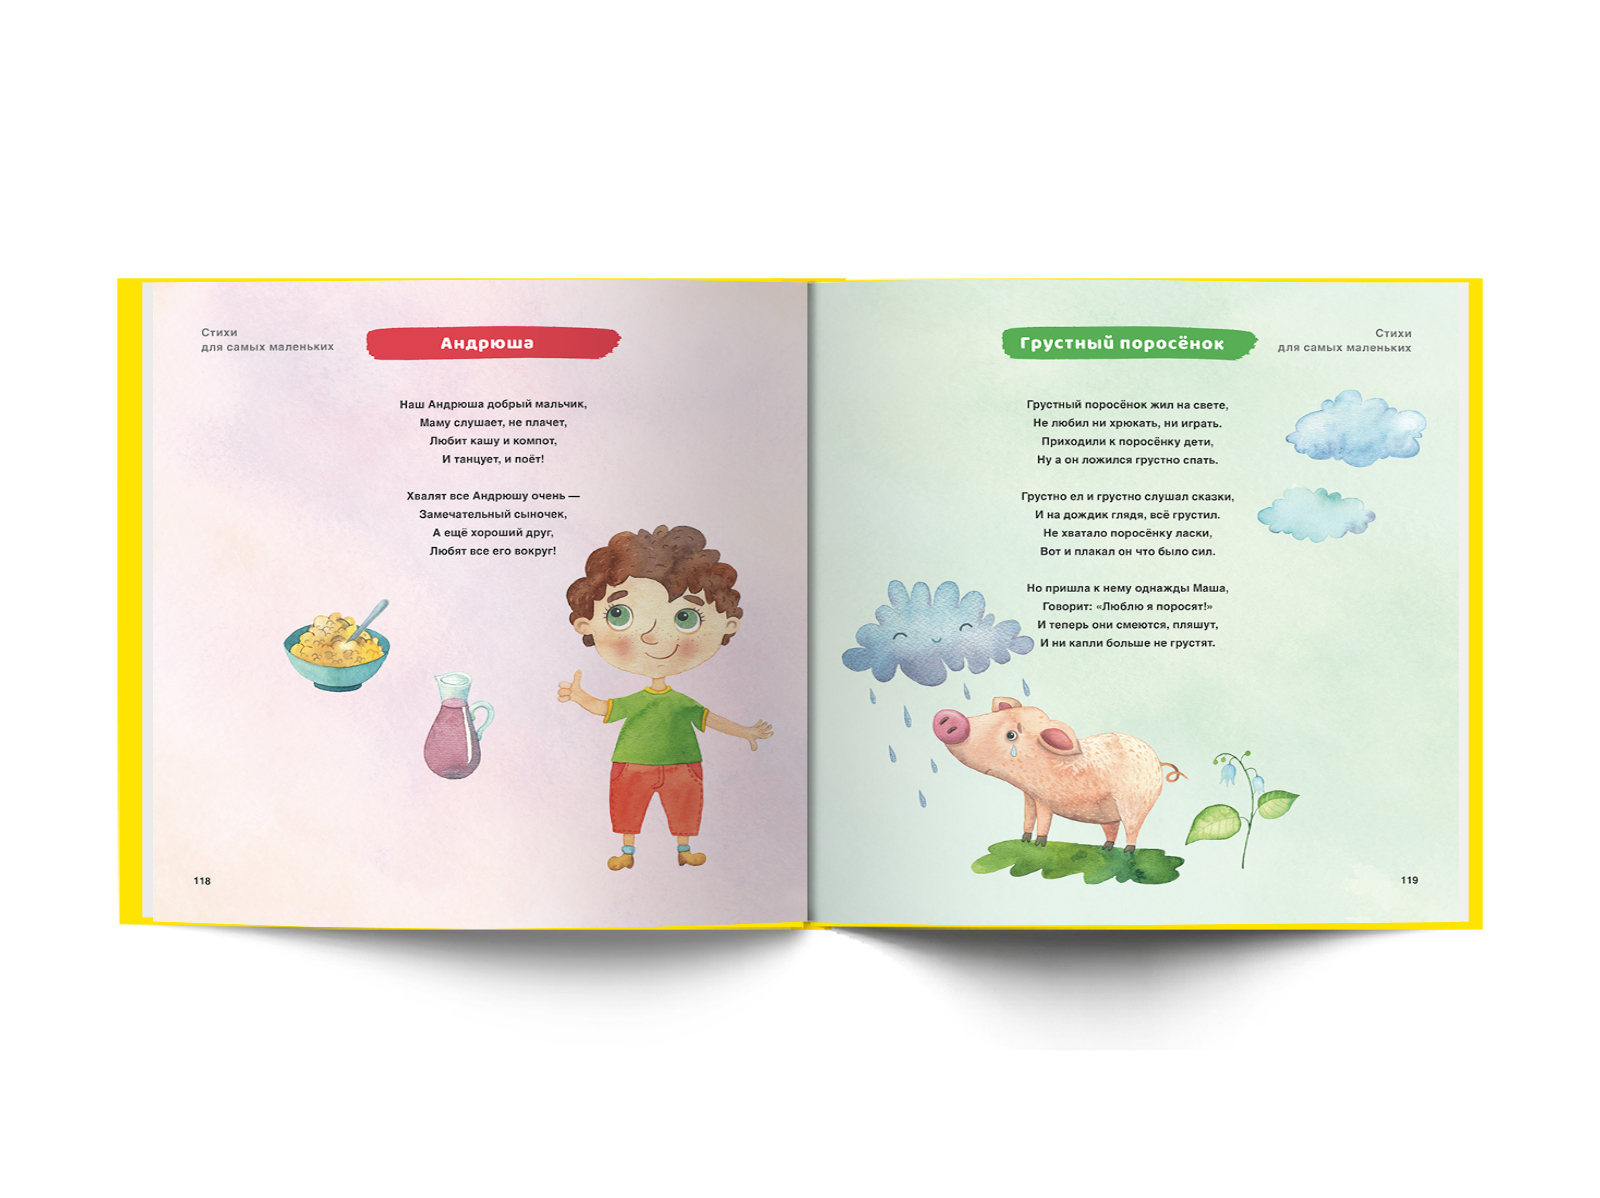 Секреты развития мозга ребенка лаштабега. Книжки для самых маленьких 0+. Книга ваш малыш шаг за шагом. Для малышей 0+. Книга для детей 0+ лет по как поивлаяца дети.